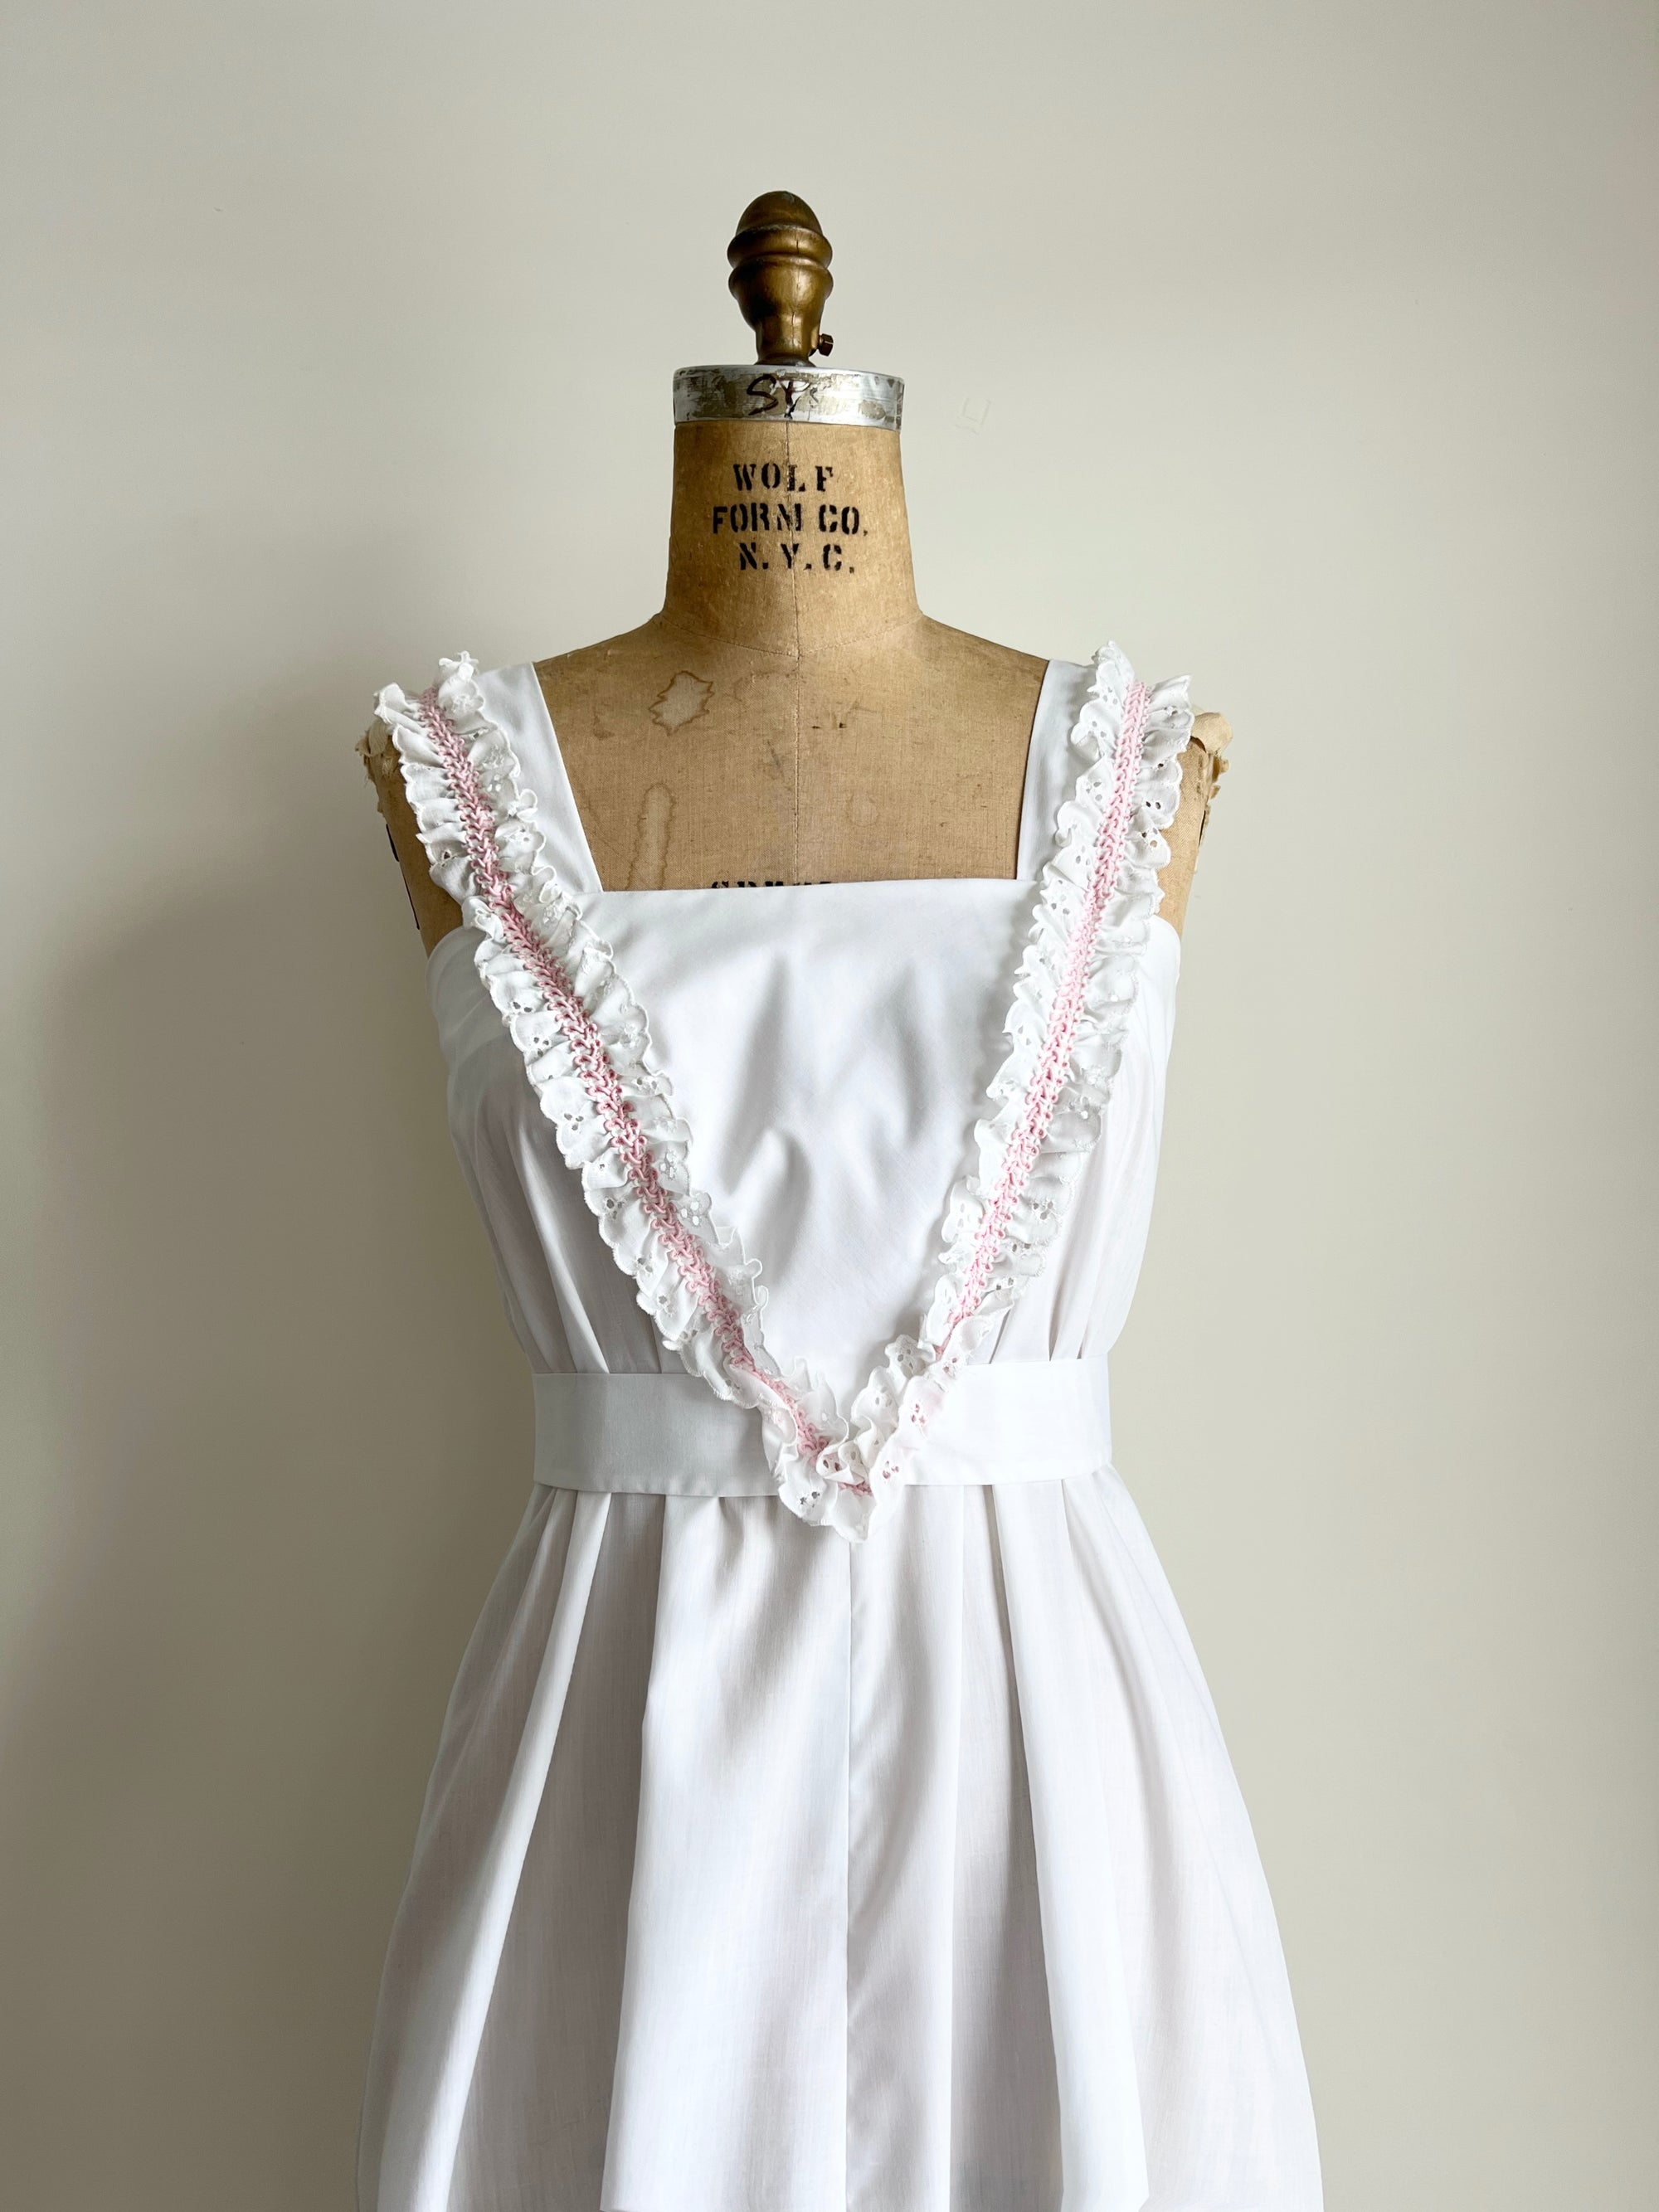 1970s 80s Ruffle Lace Cotton Dress / Small-Medium